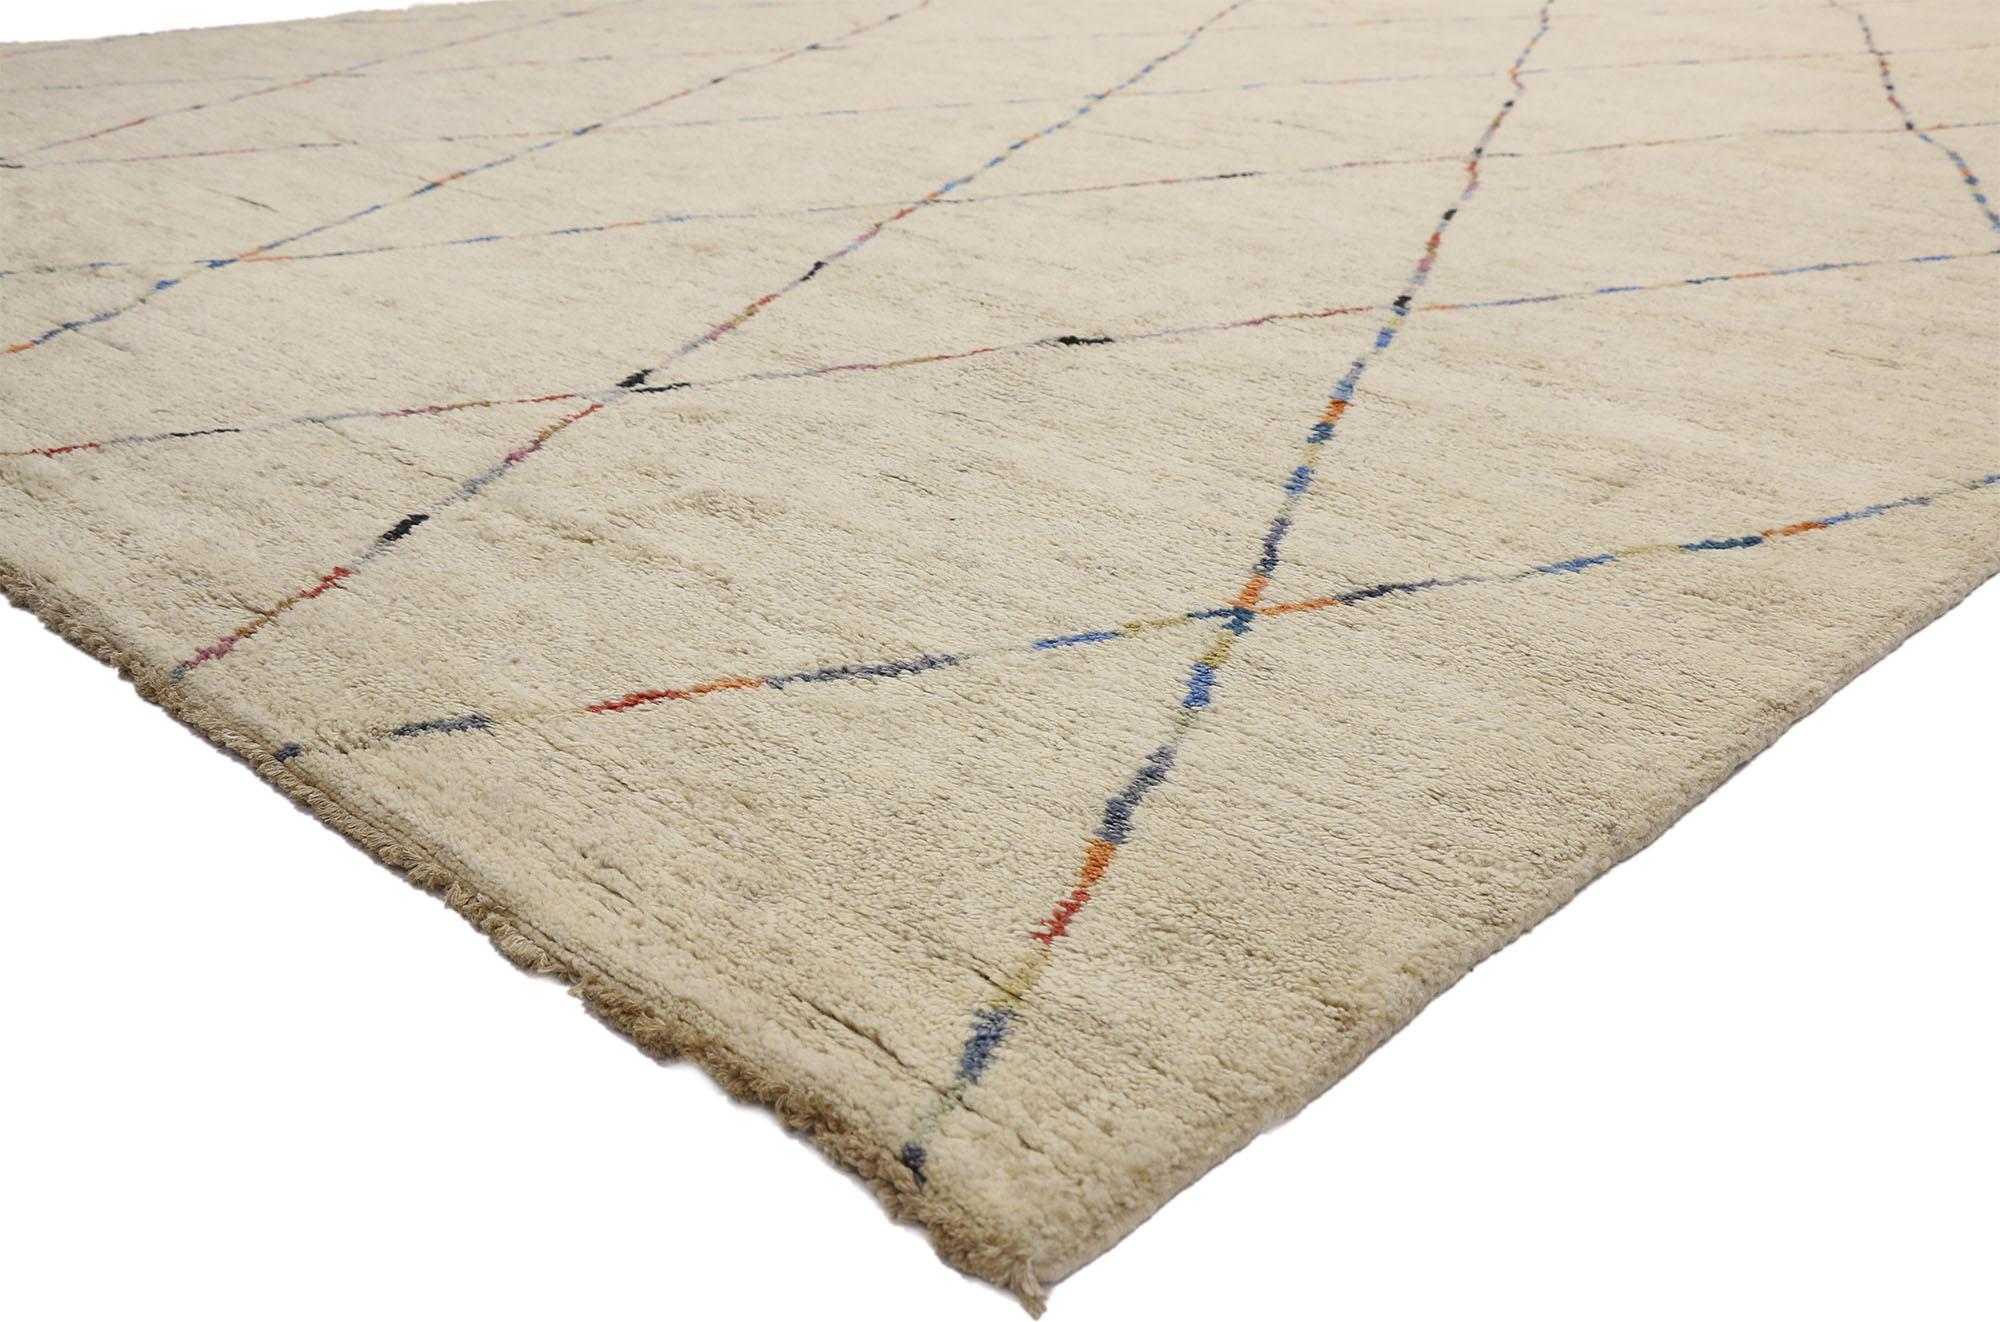 80468 Tapis marocain surdimensionné, 12'05 x 19'08. 
Dans ce tapis marocain surdimensionné en laine nouée à la main, la fusion des esthétiques Boho Chic et Hygge heureuse crée une toile captivante de beauté tissée. Mesurant près de 12 x 20 pieds, ce